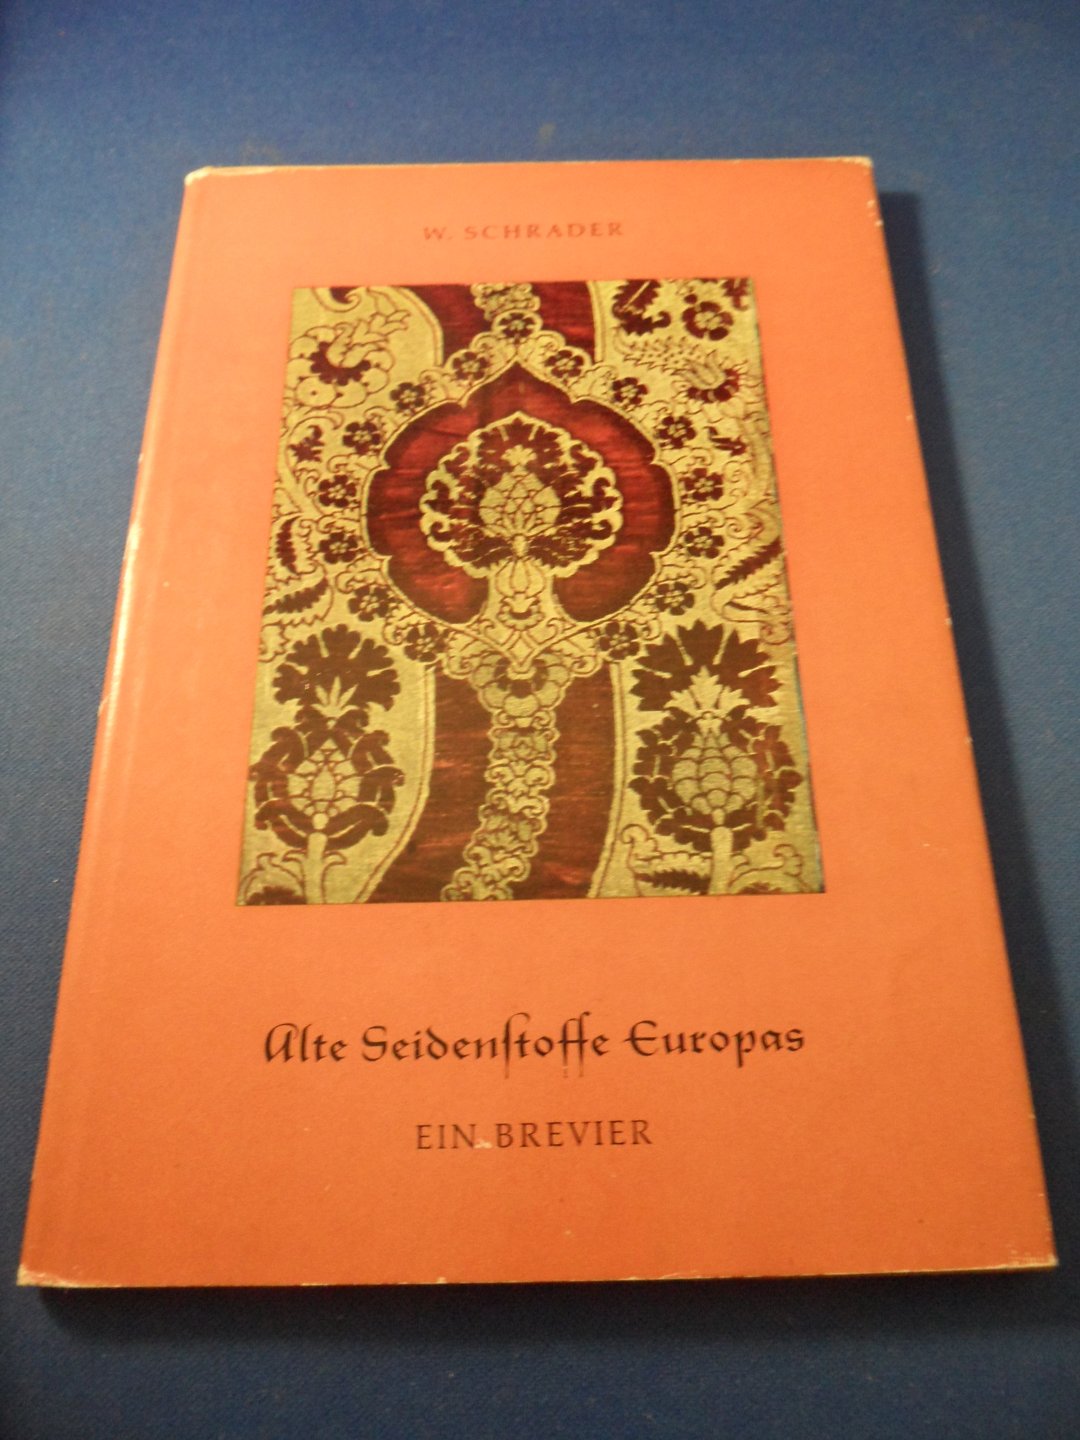 Schrader, Walter - Alte Seidenstoffe Europas ein brevier